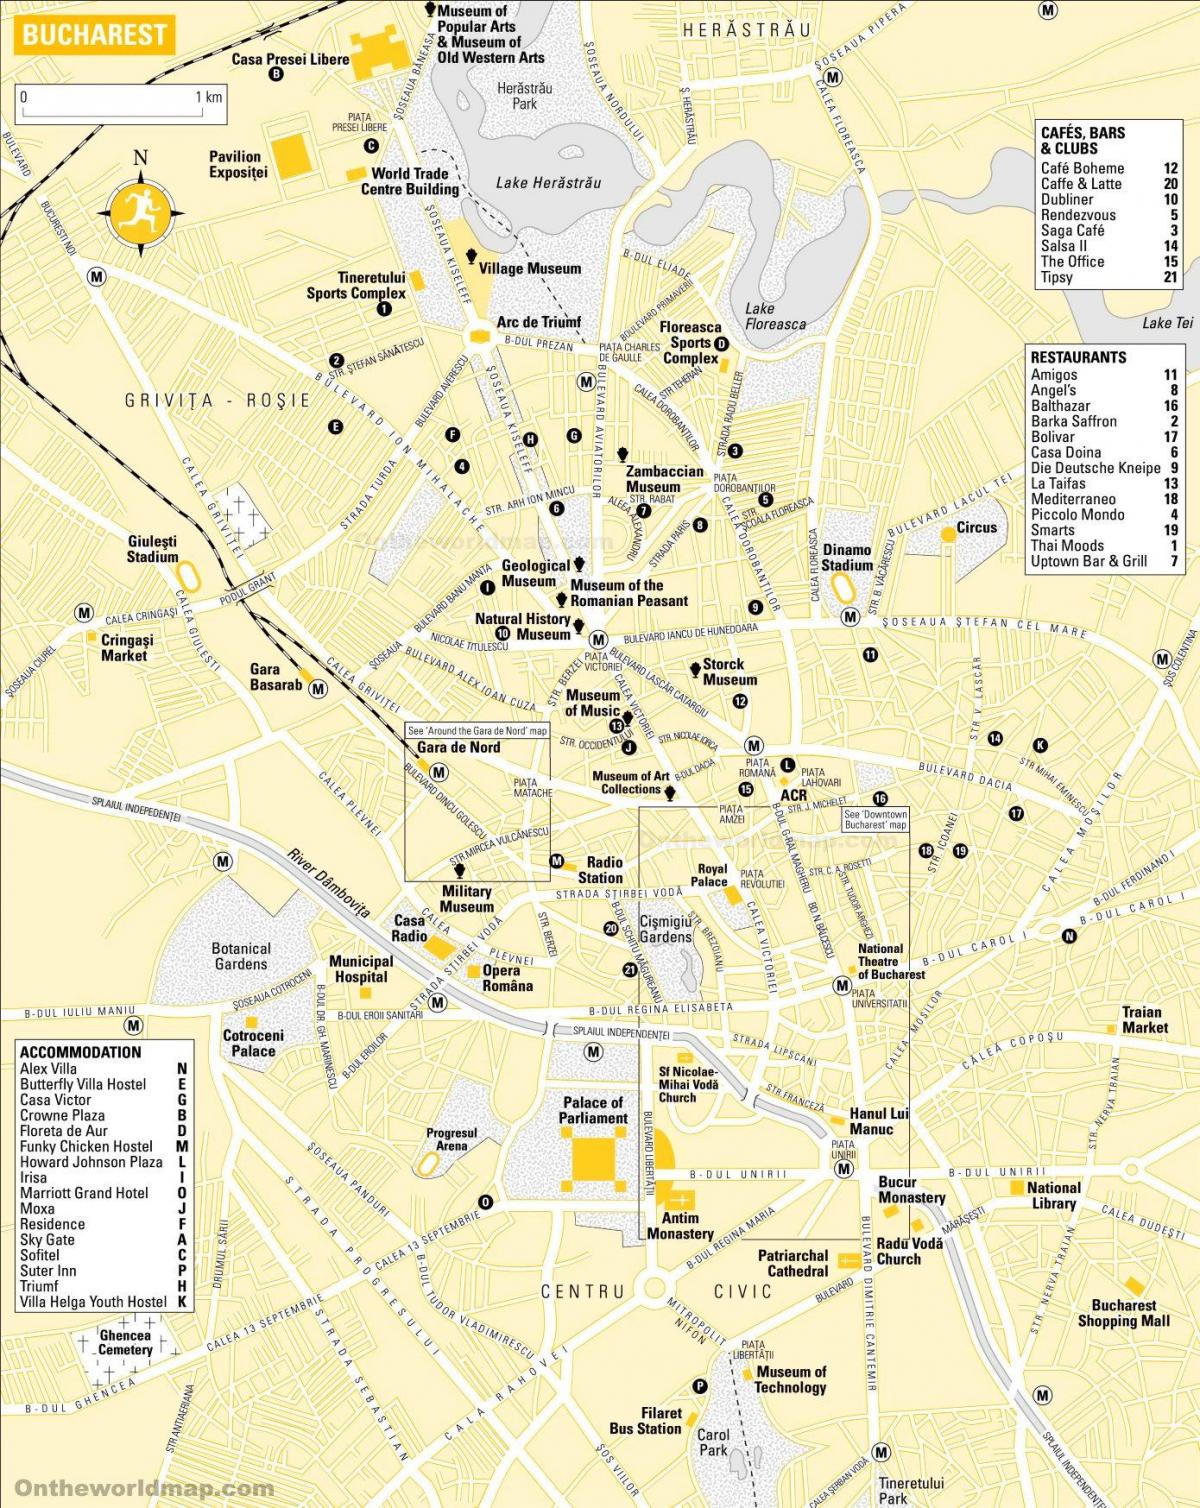 Mappa del parco zoologico di Bucarest